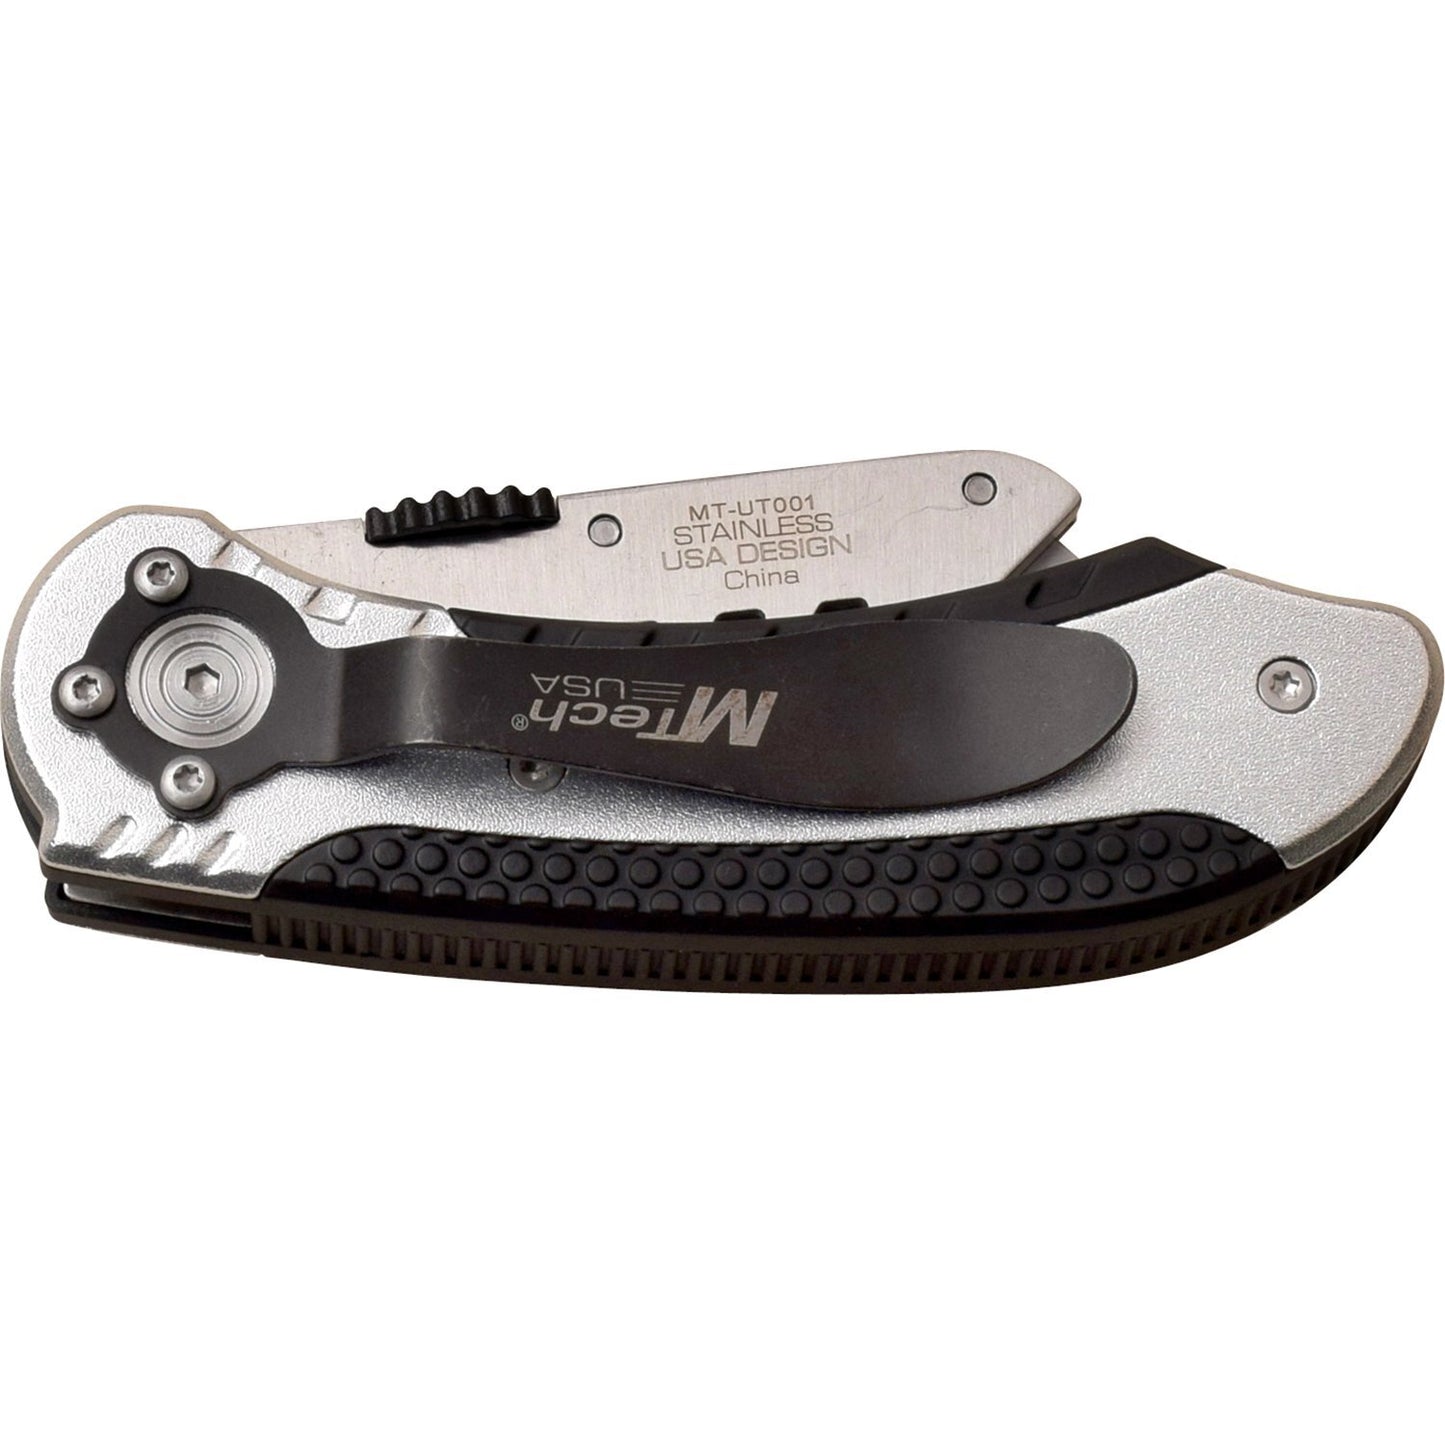 Mtech Mtech 6.25 Inch Utility Blade Button Lock Folding Knife - Silver #mt-Ut001S Dark Slate Gray